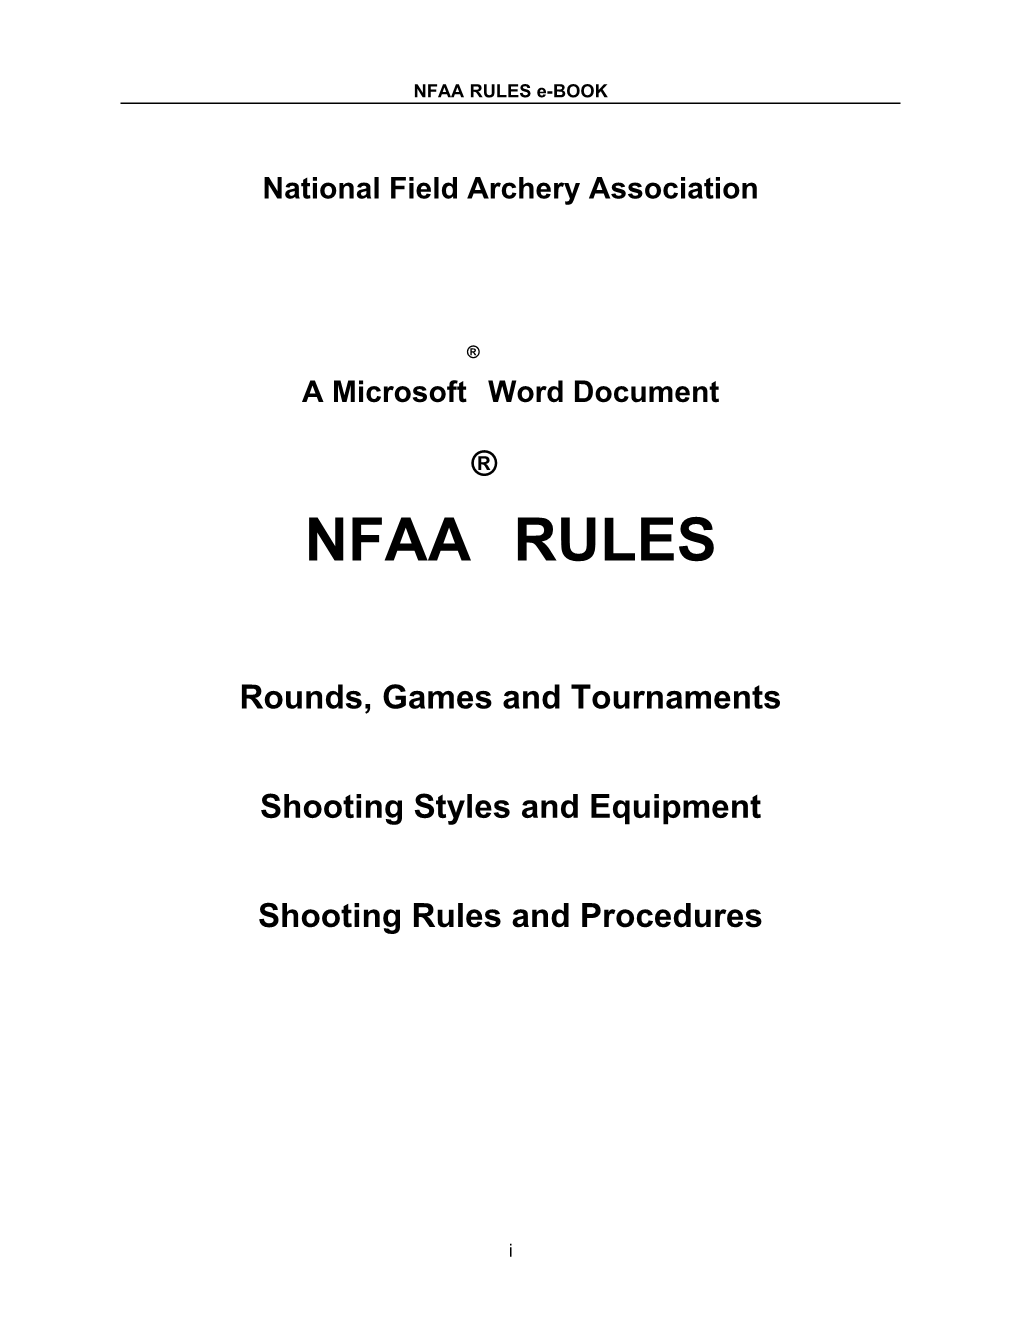 NFAA Rule Book